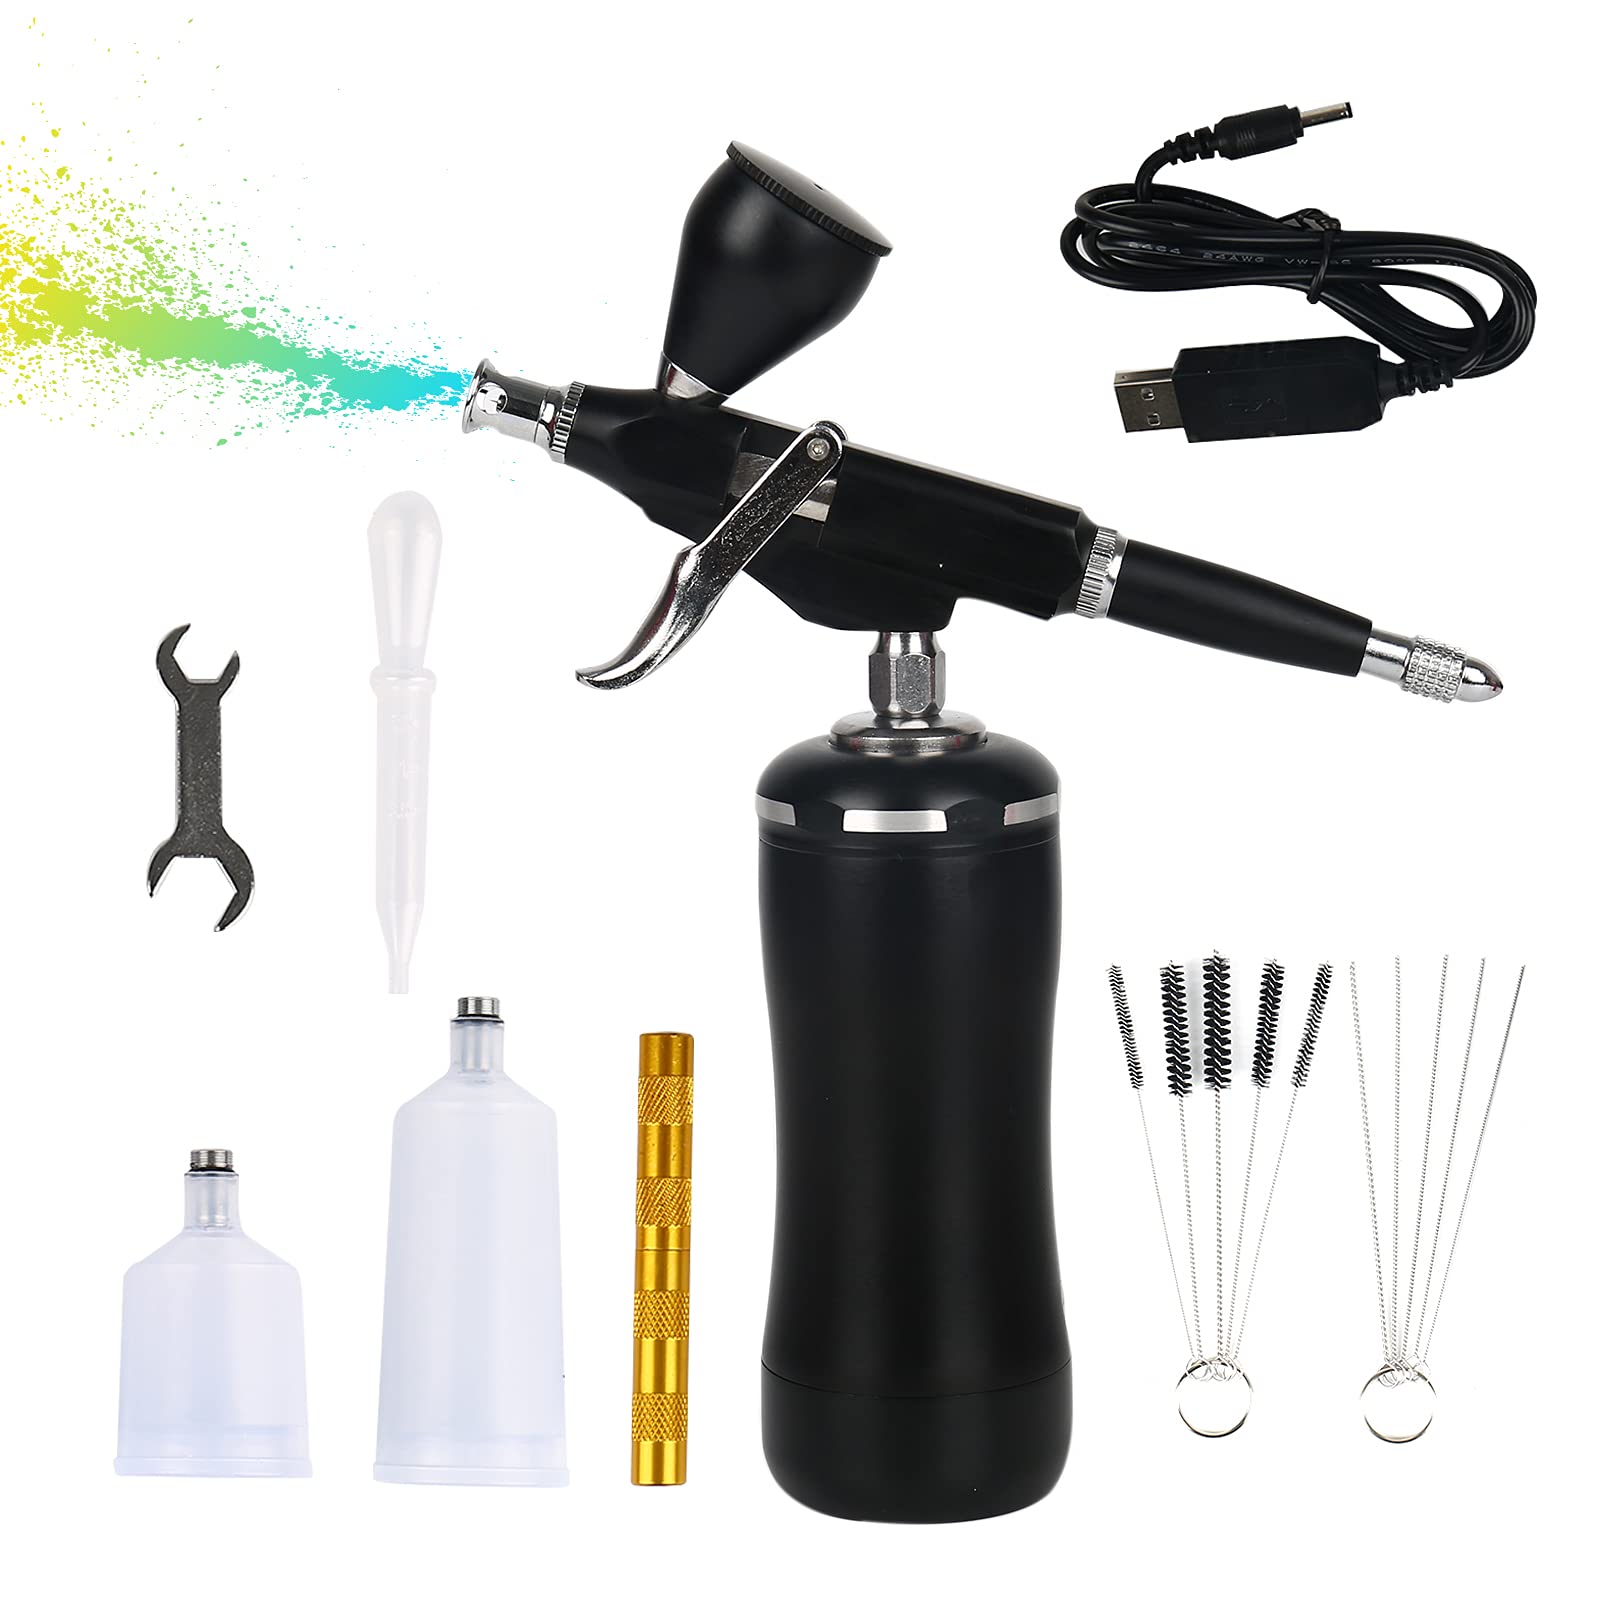 EUNEWR Handheld Airbrush Kit Mini-Luftkompressor-Spritzpistole Air Pinsel Spray Set Airbrush-Spritzpistole Kit für Art,Tattoo,Backen,Make-up (Schwarz)